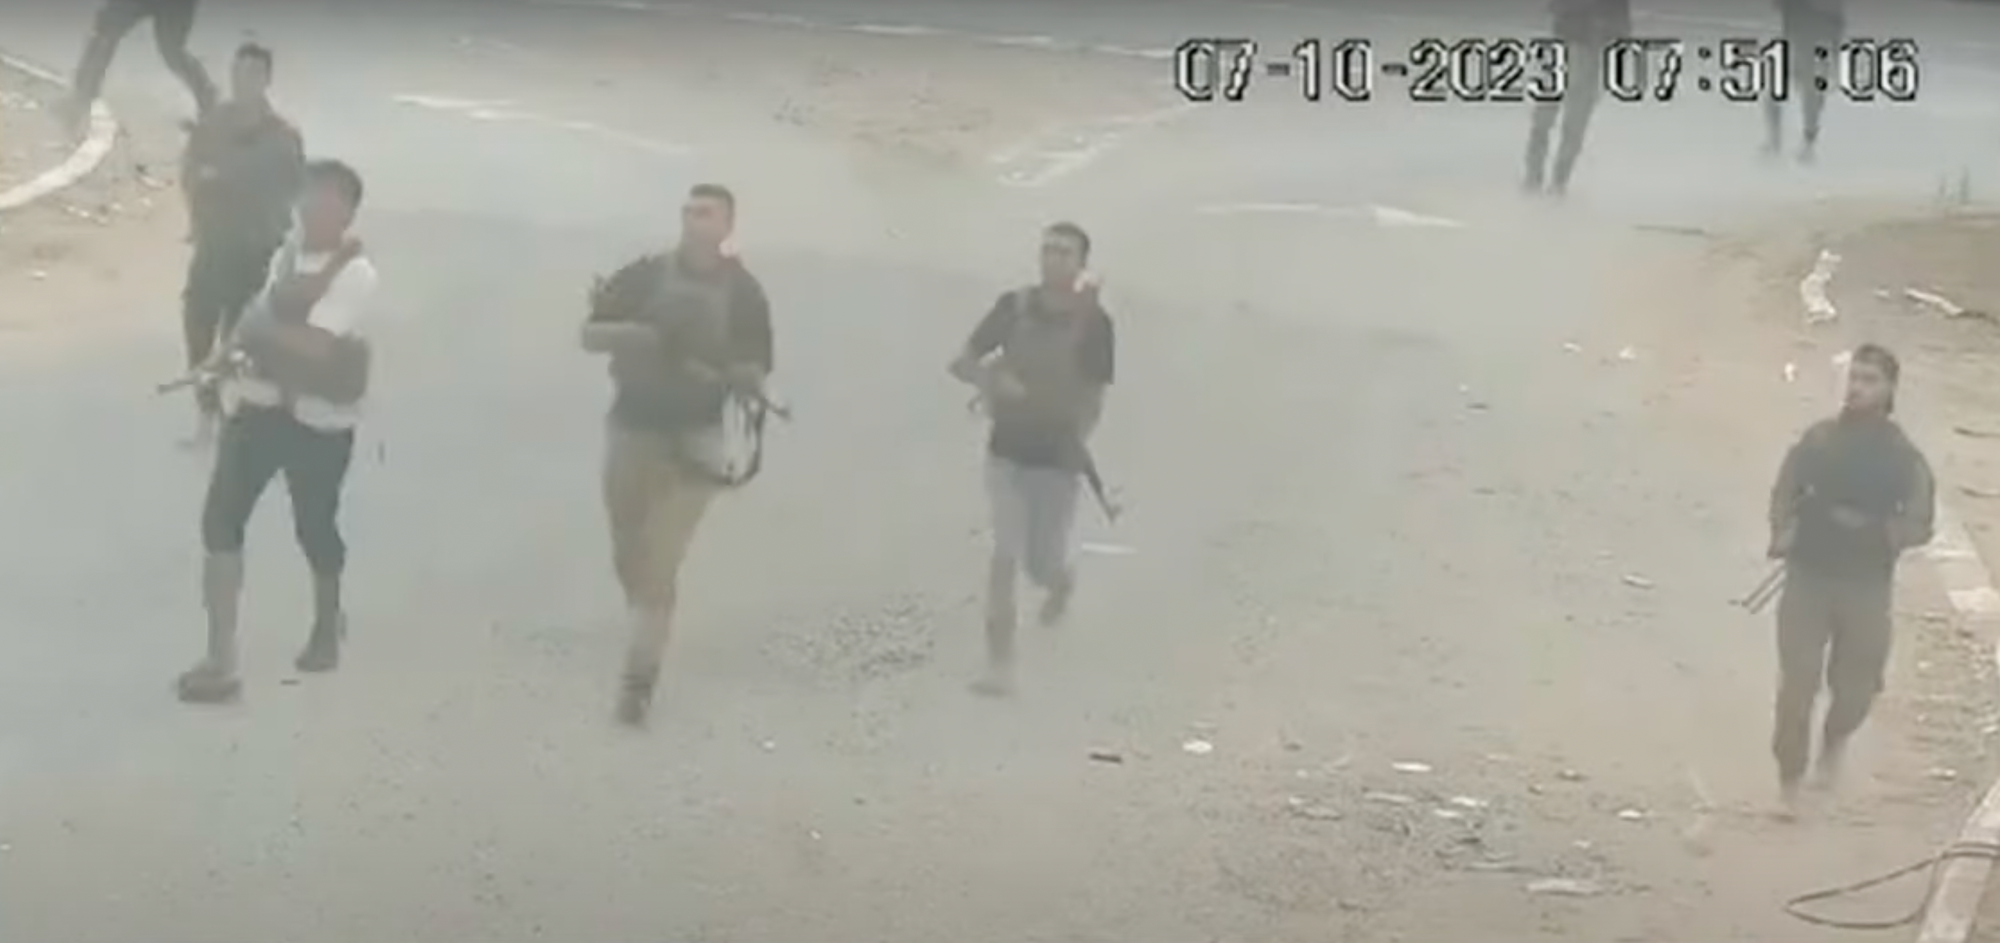 ASSISTA: ‘Eles foram para matar, em vez disso invadiram as prateleiras’ – novas imagens de CCTV de 7 de outubro